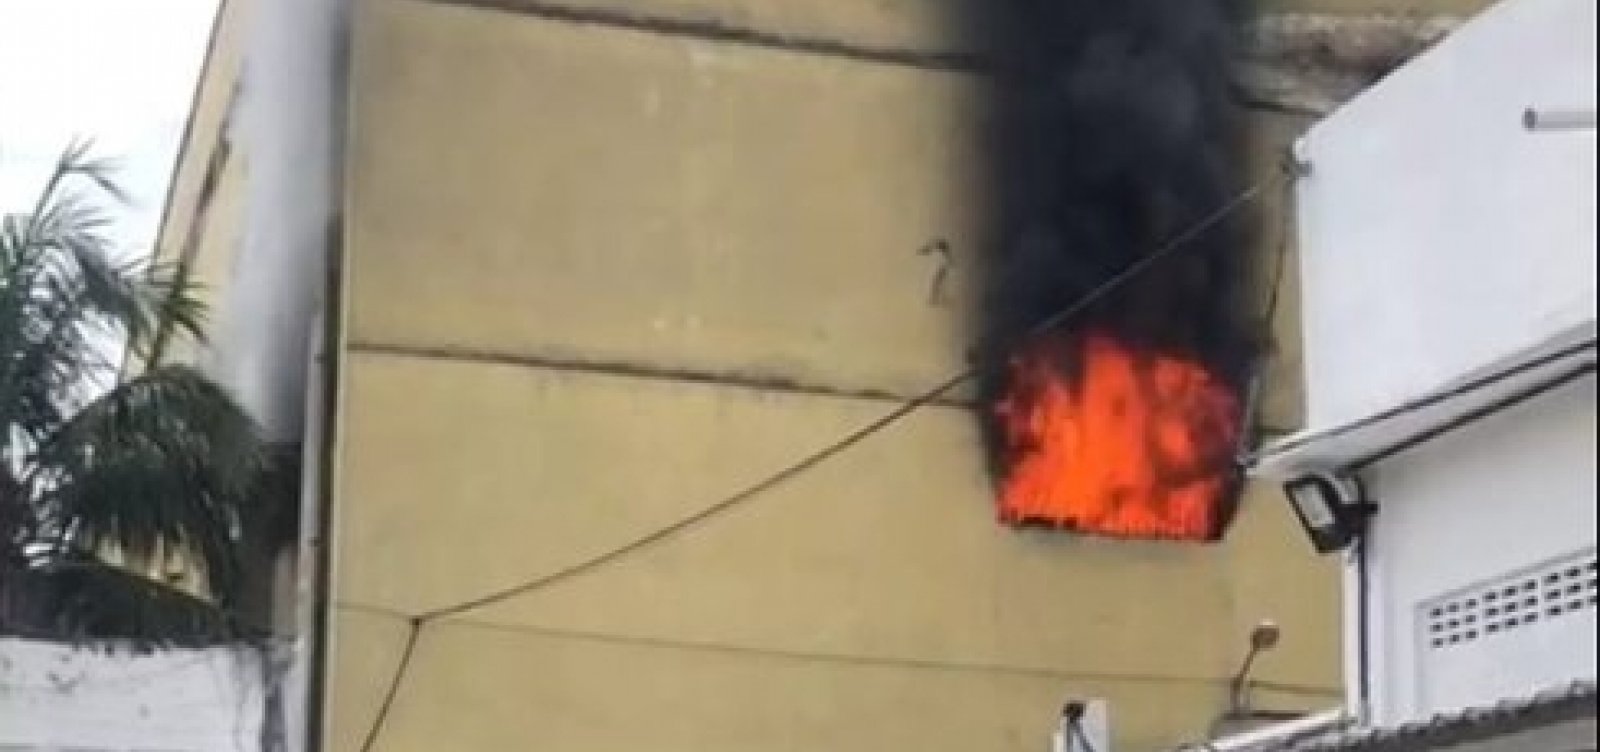 Incêndio atinge presídio na Zona Norte do Rio de Janeiro